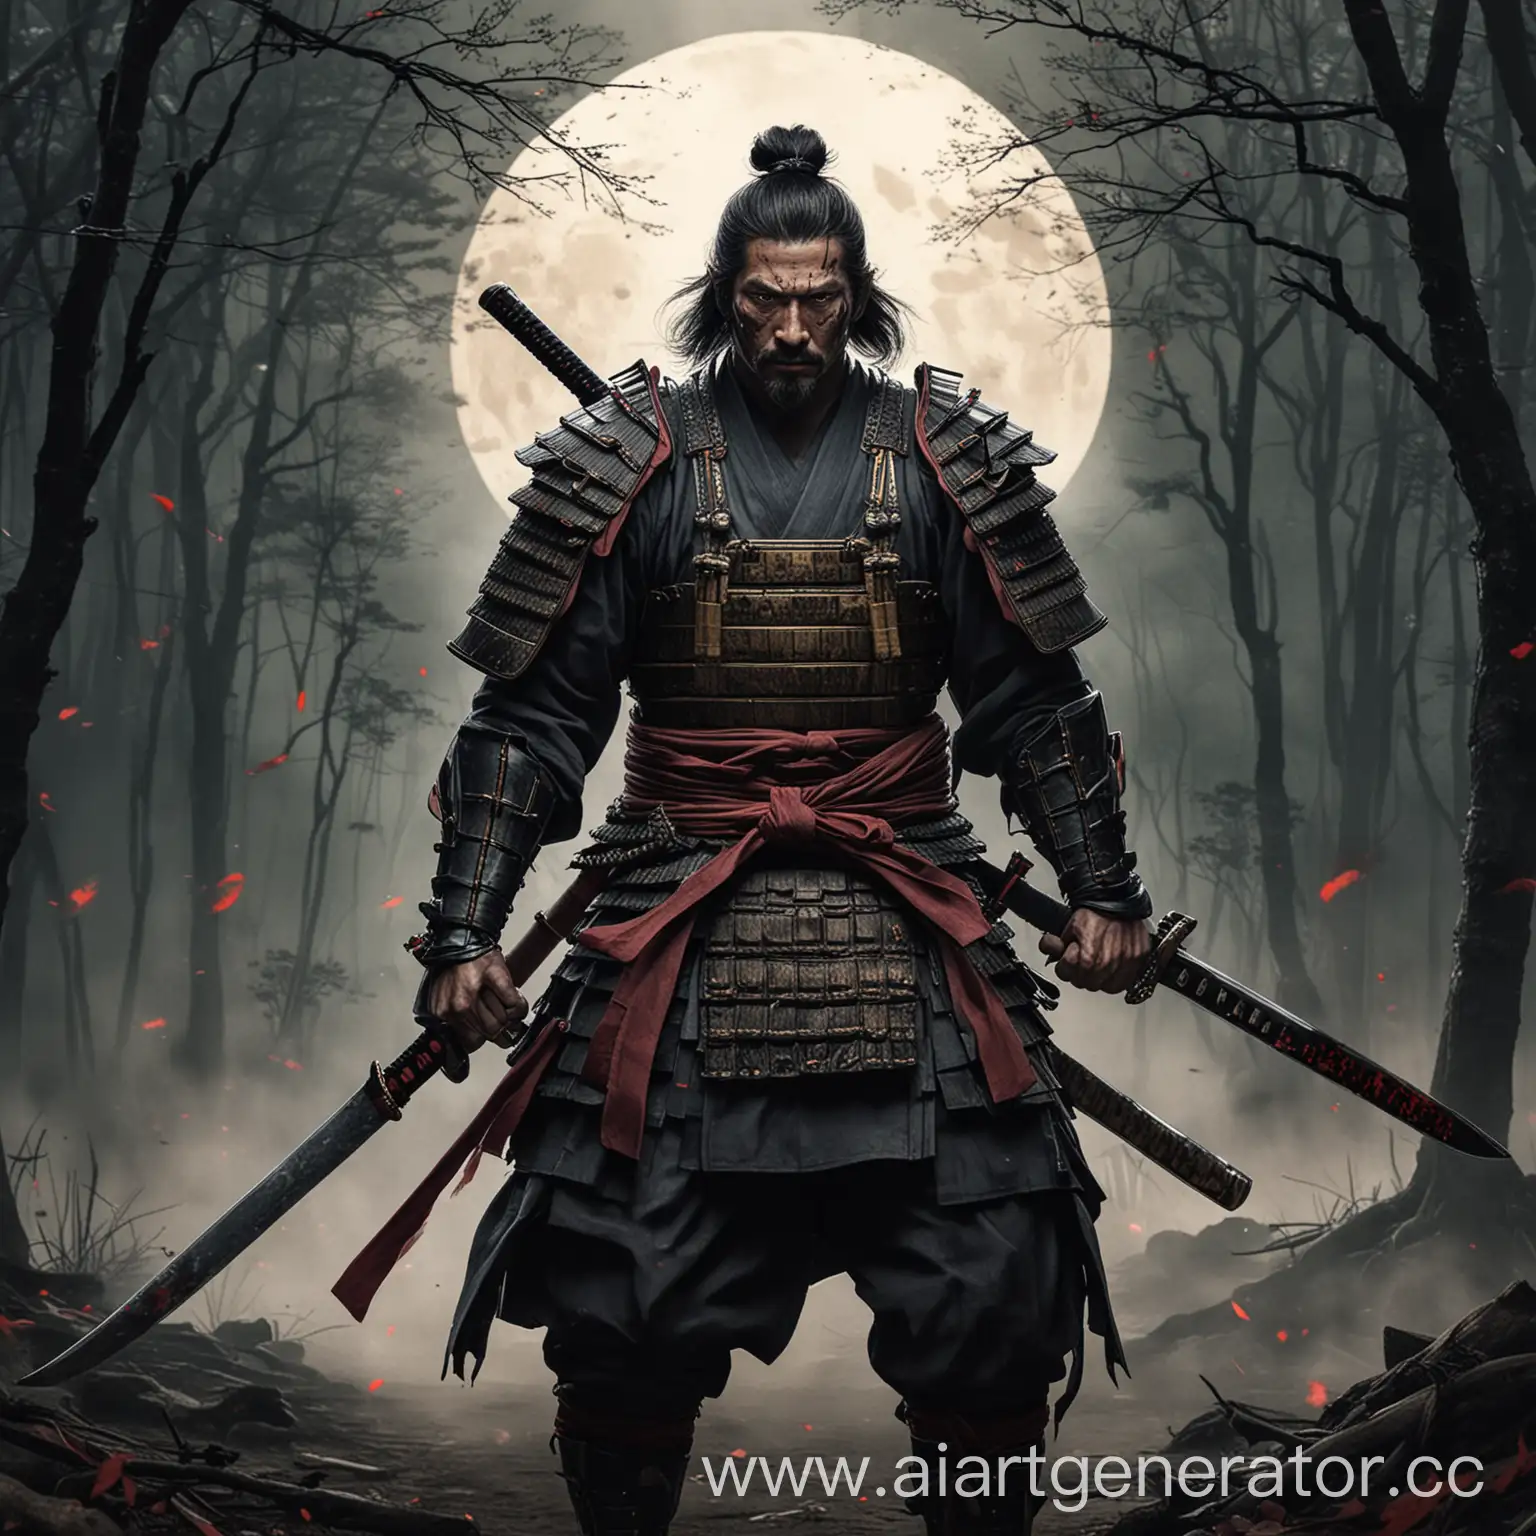 Brave-Samurai-Warrior-Standing-Ready-for-Battle